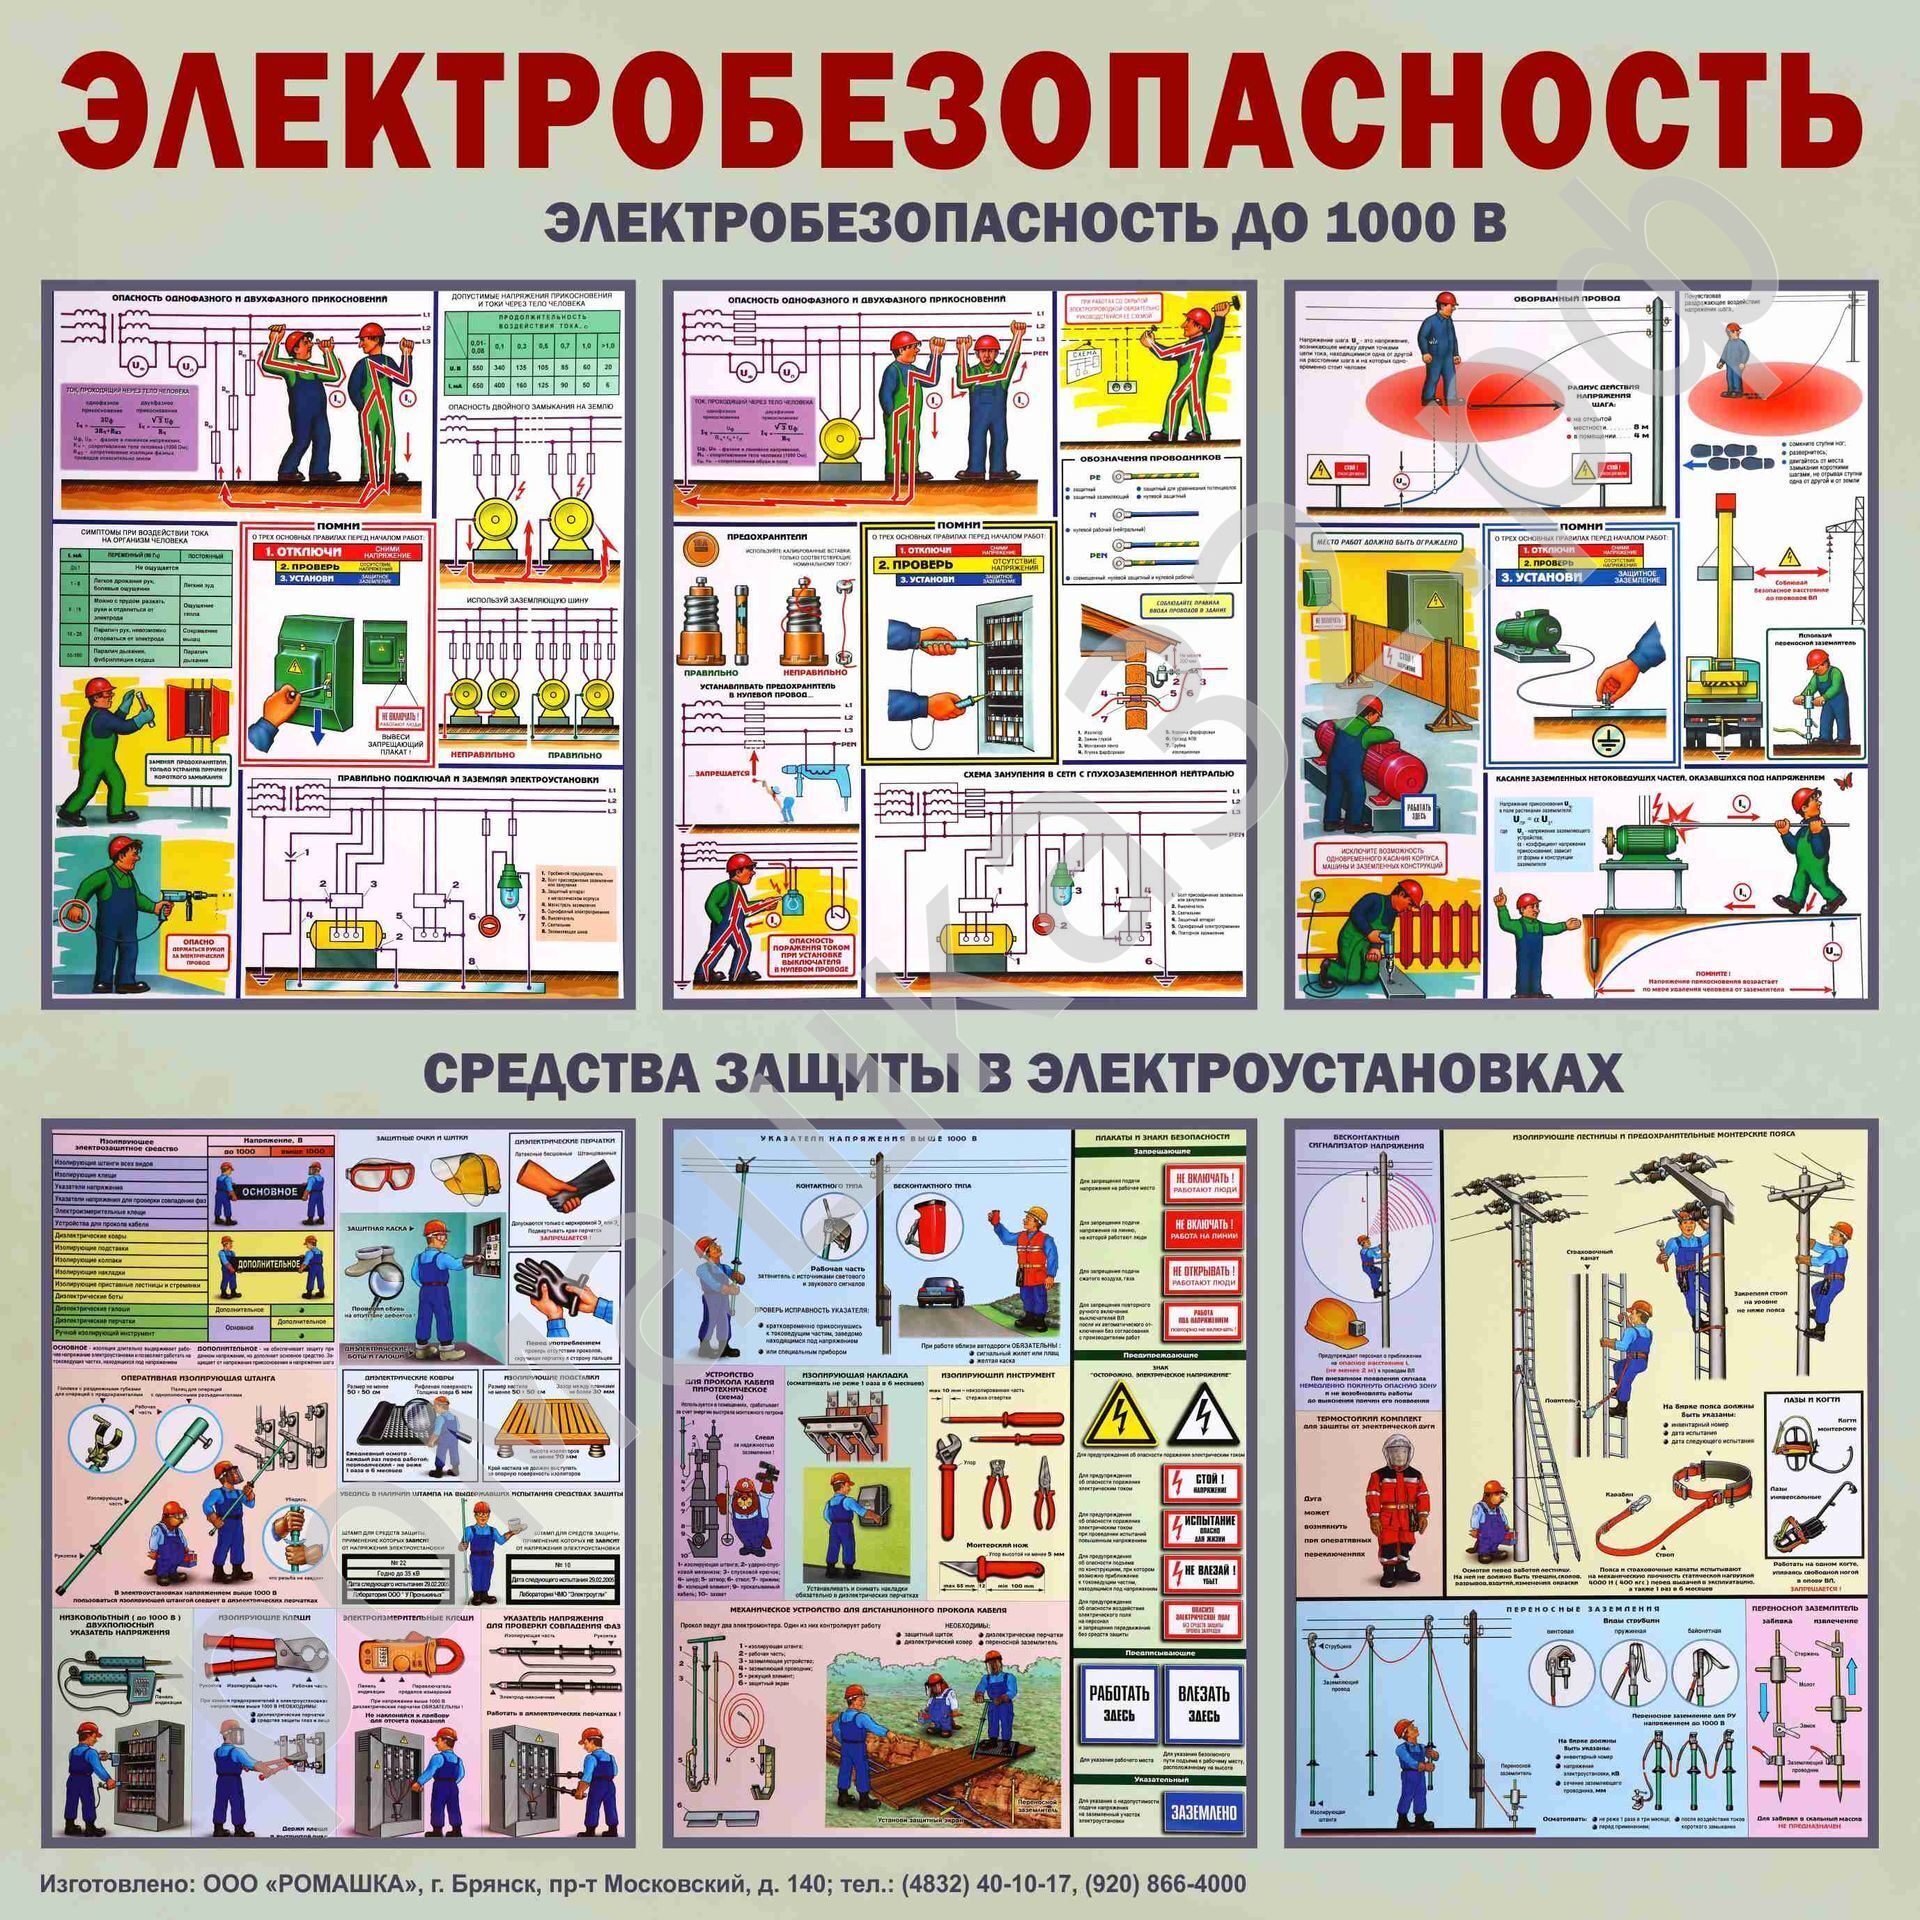 Электробезопасность 2 группа обучение atelectro ru. Электробезопасность. Плакат «электробезопасность». Плакаты по электробезопасности в электроустановках. Электробезопасность на производстве охрана труда.